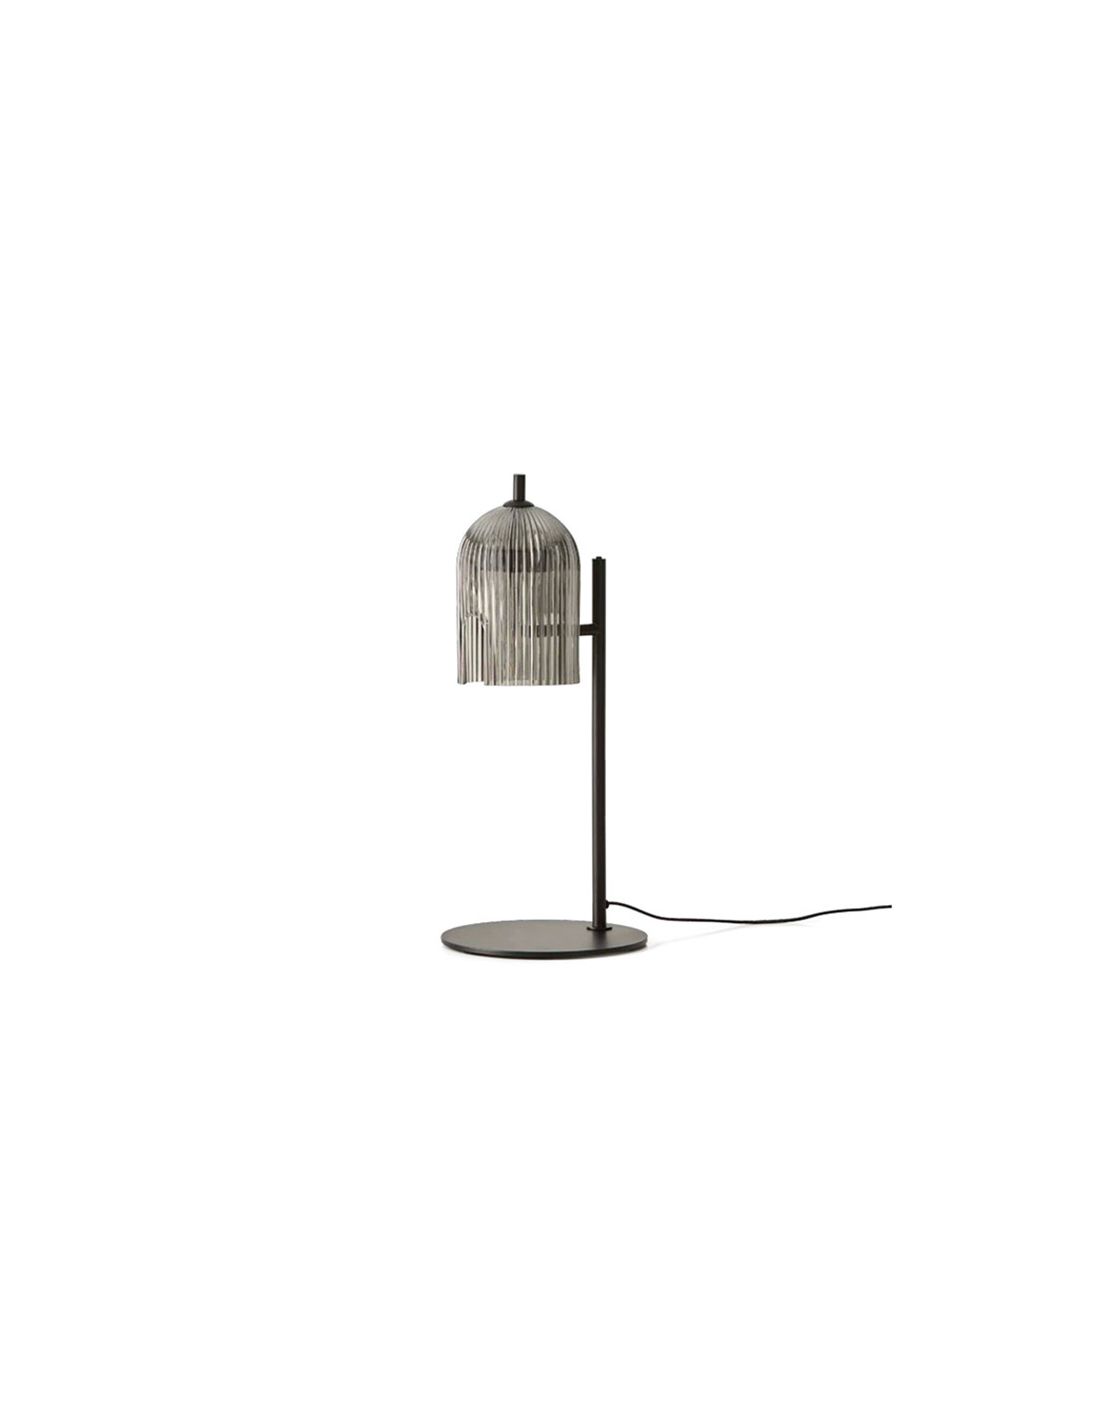 Lampe à poser design led avec base arrondie en métal et boule lumineus